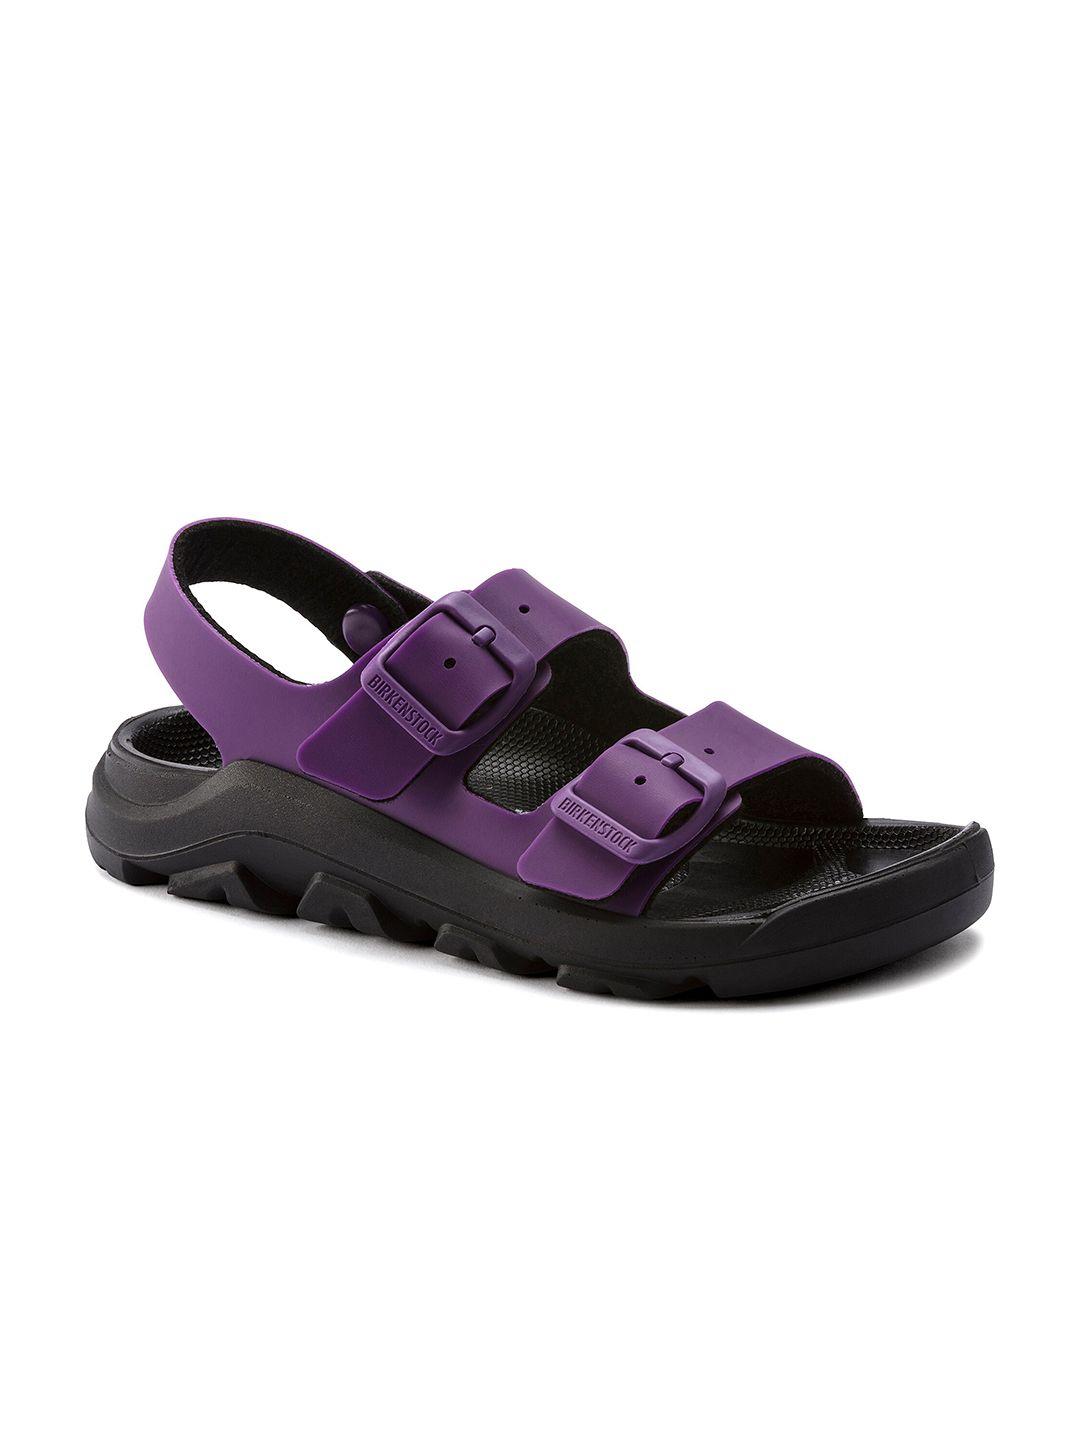 birkenstock girls purple mogami narrow width open toe flats with buckles